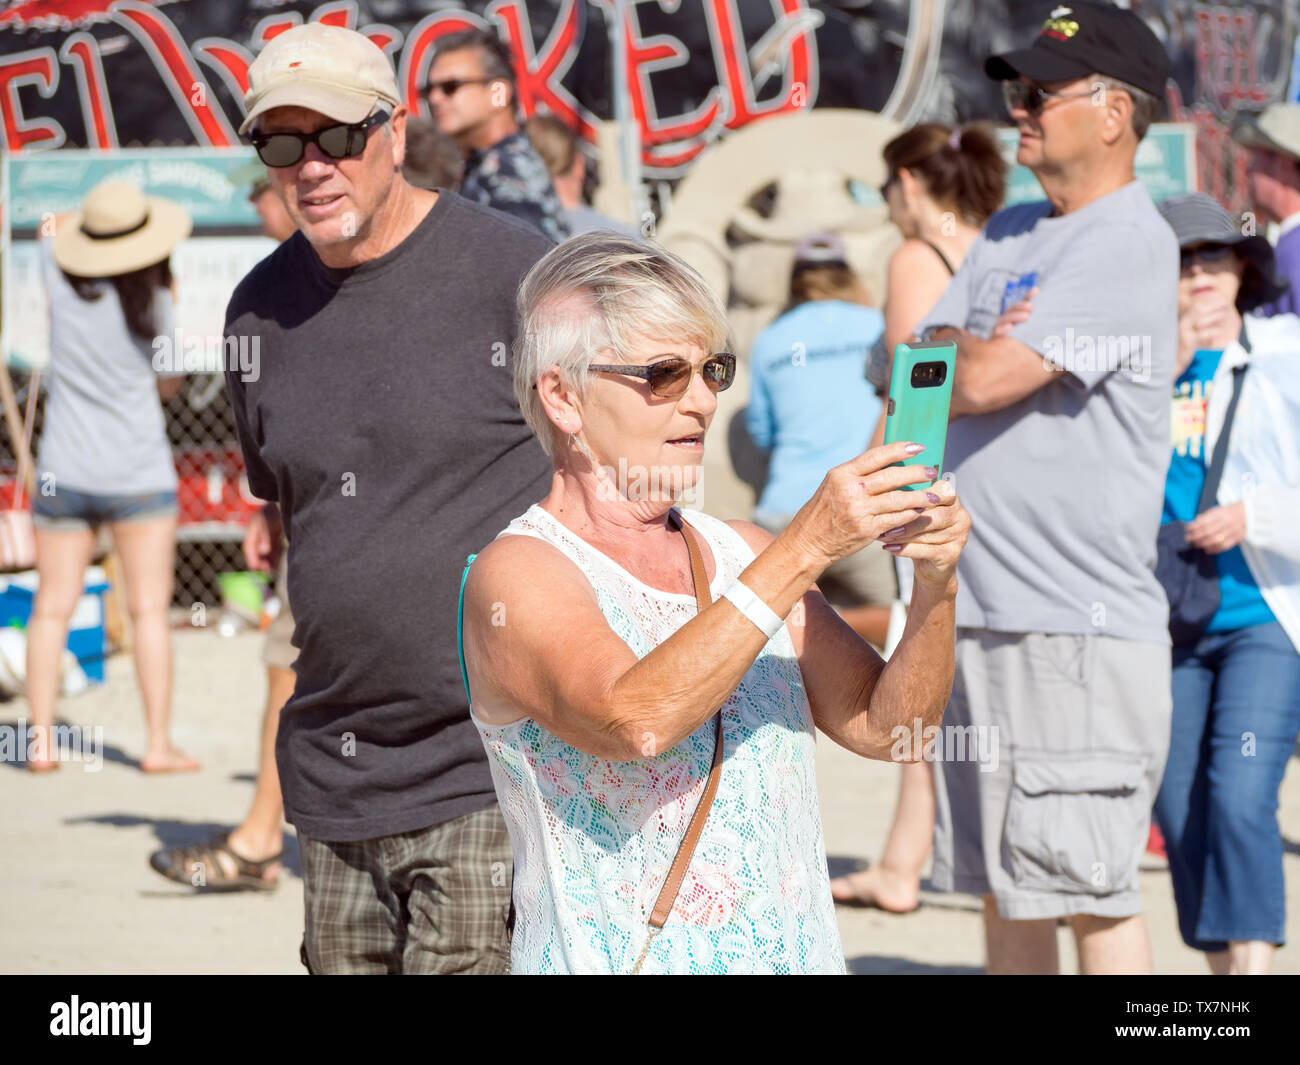 A senior woman in sunglasses prend une photo avec un téléphone cellulaire à la Texas 2019 Sandfest à Port Aransas, Texas USA. Banque D'Images